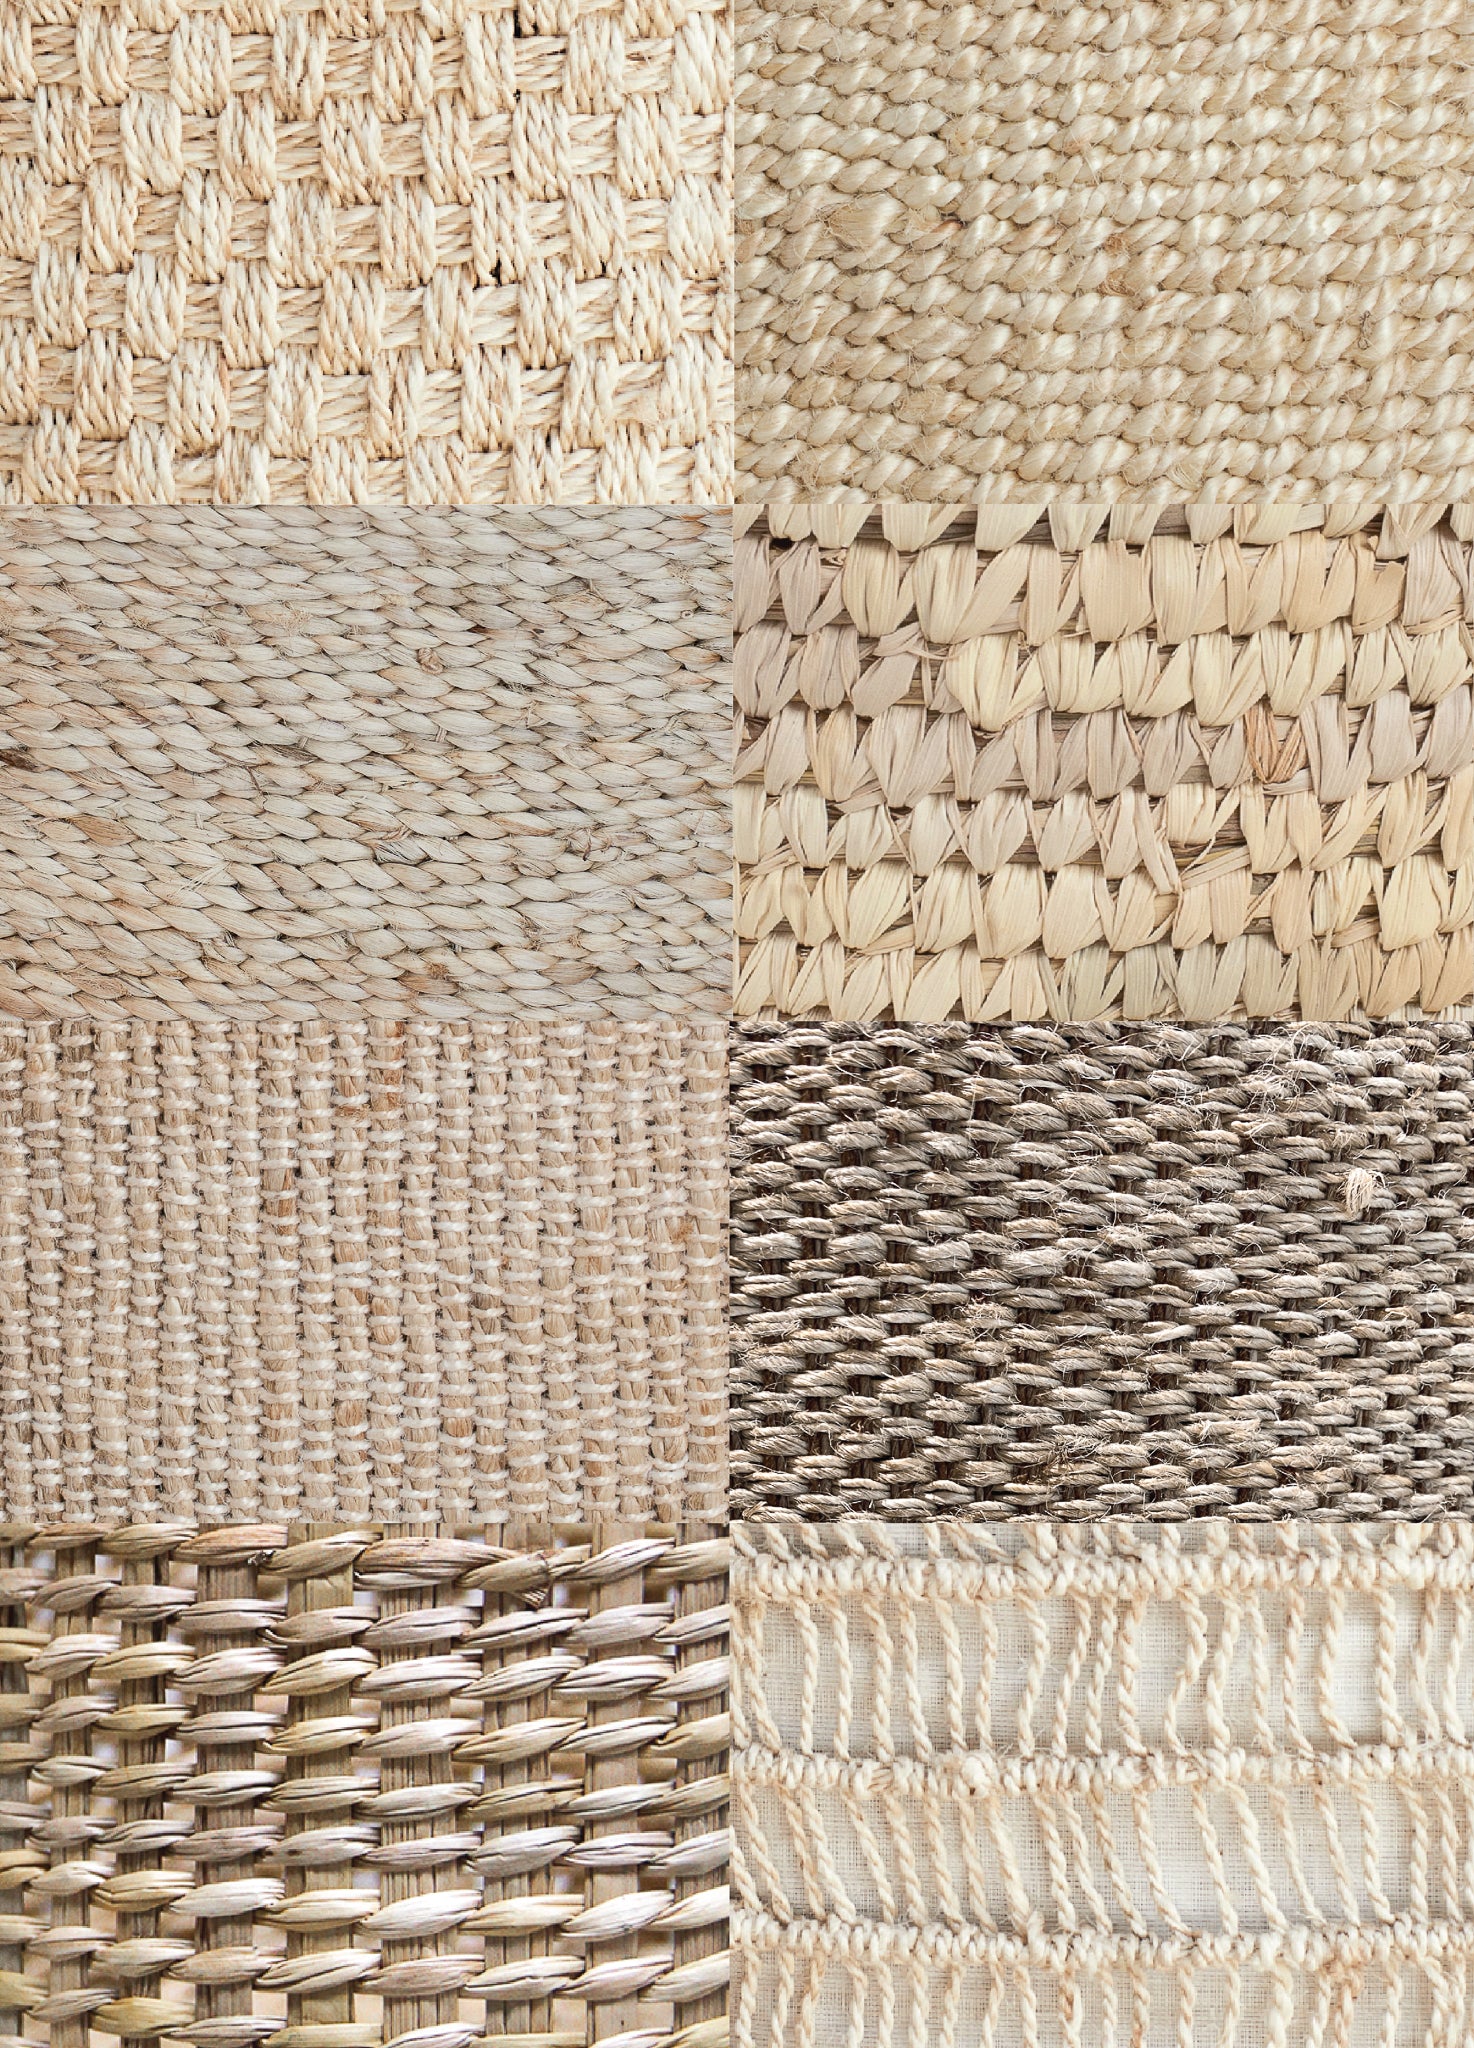 Handwoven Natural Jute Baskets Texture